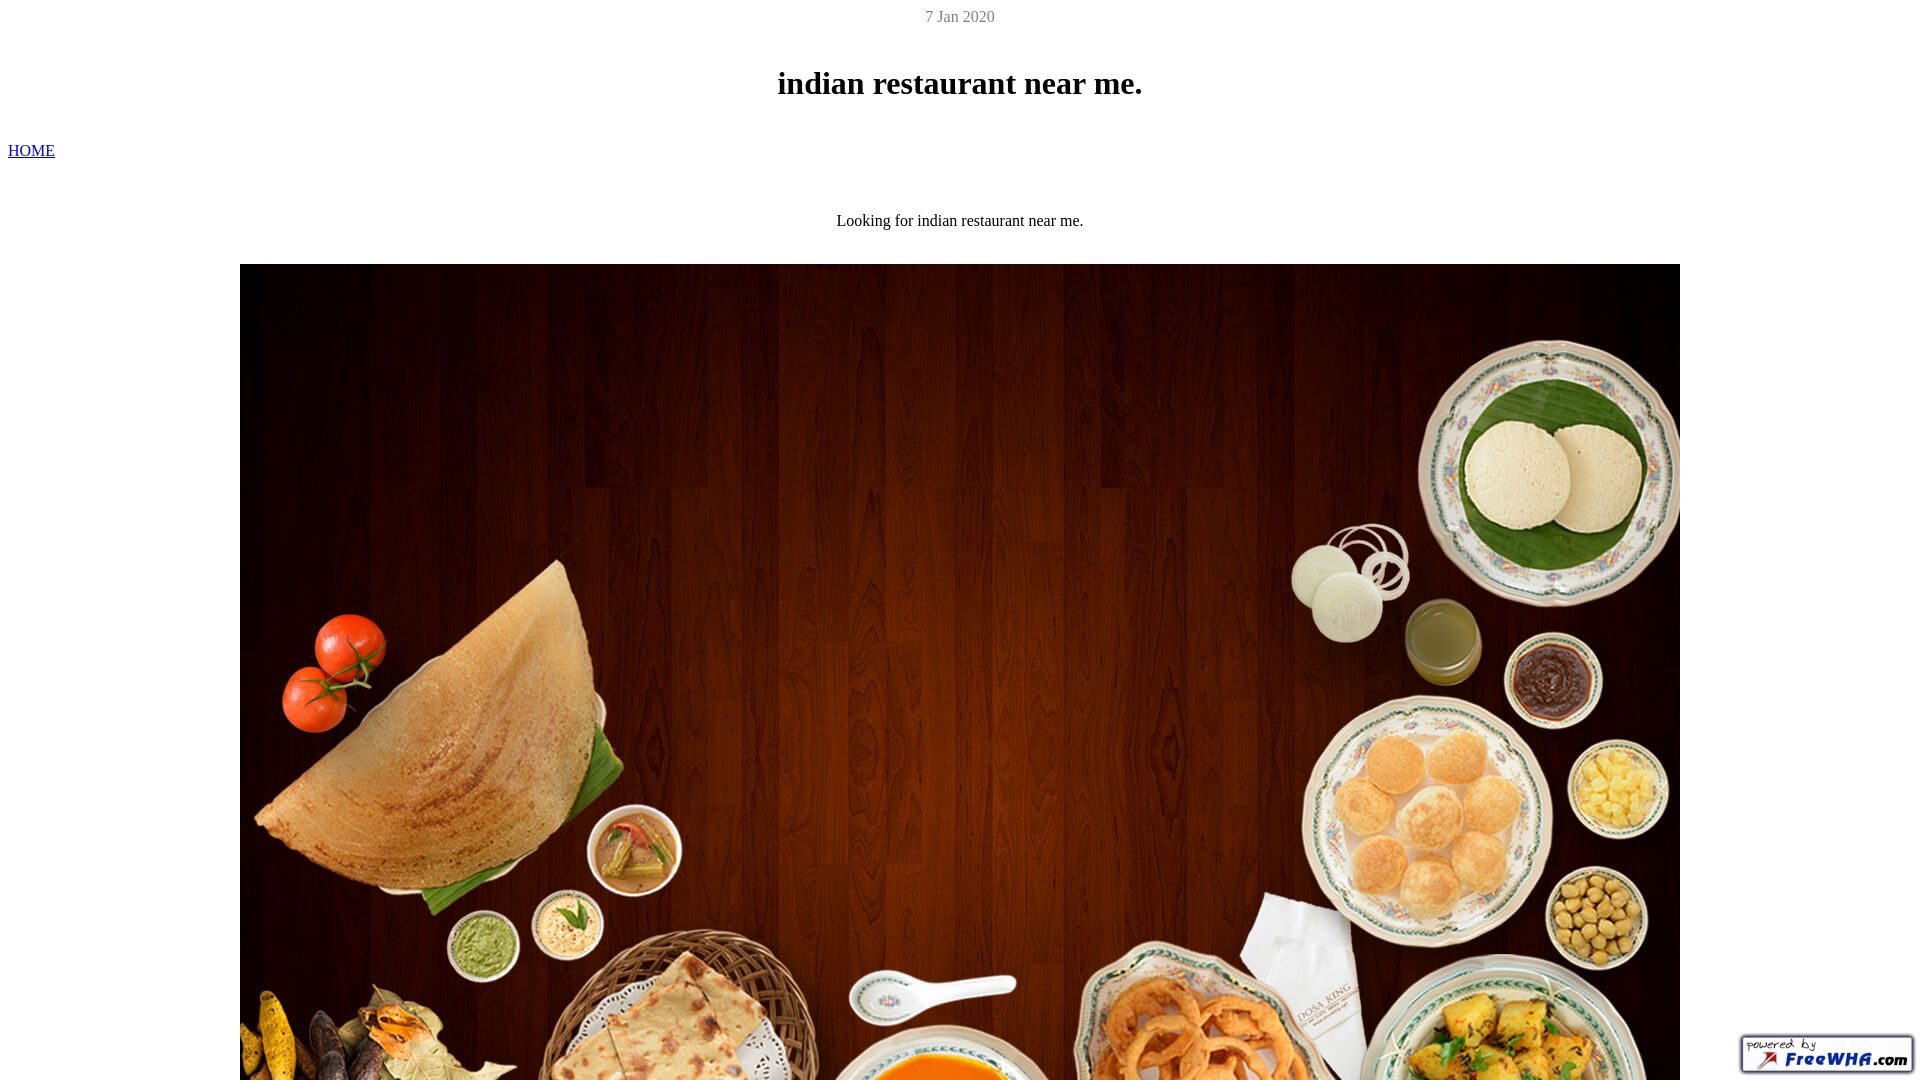 Estado web indianrestaurantnearme.ueuo.com está   ONLINE